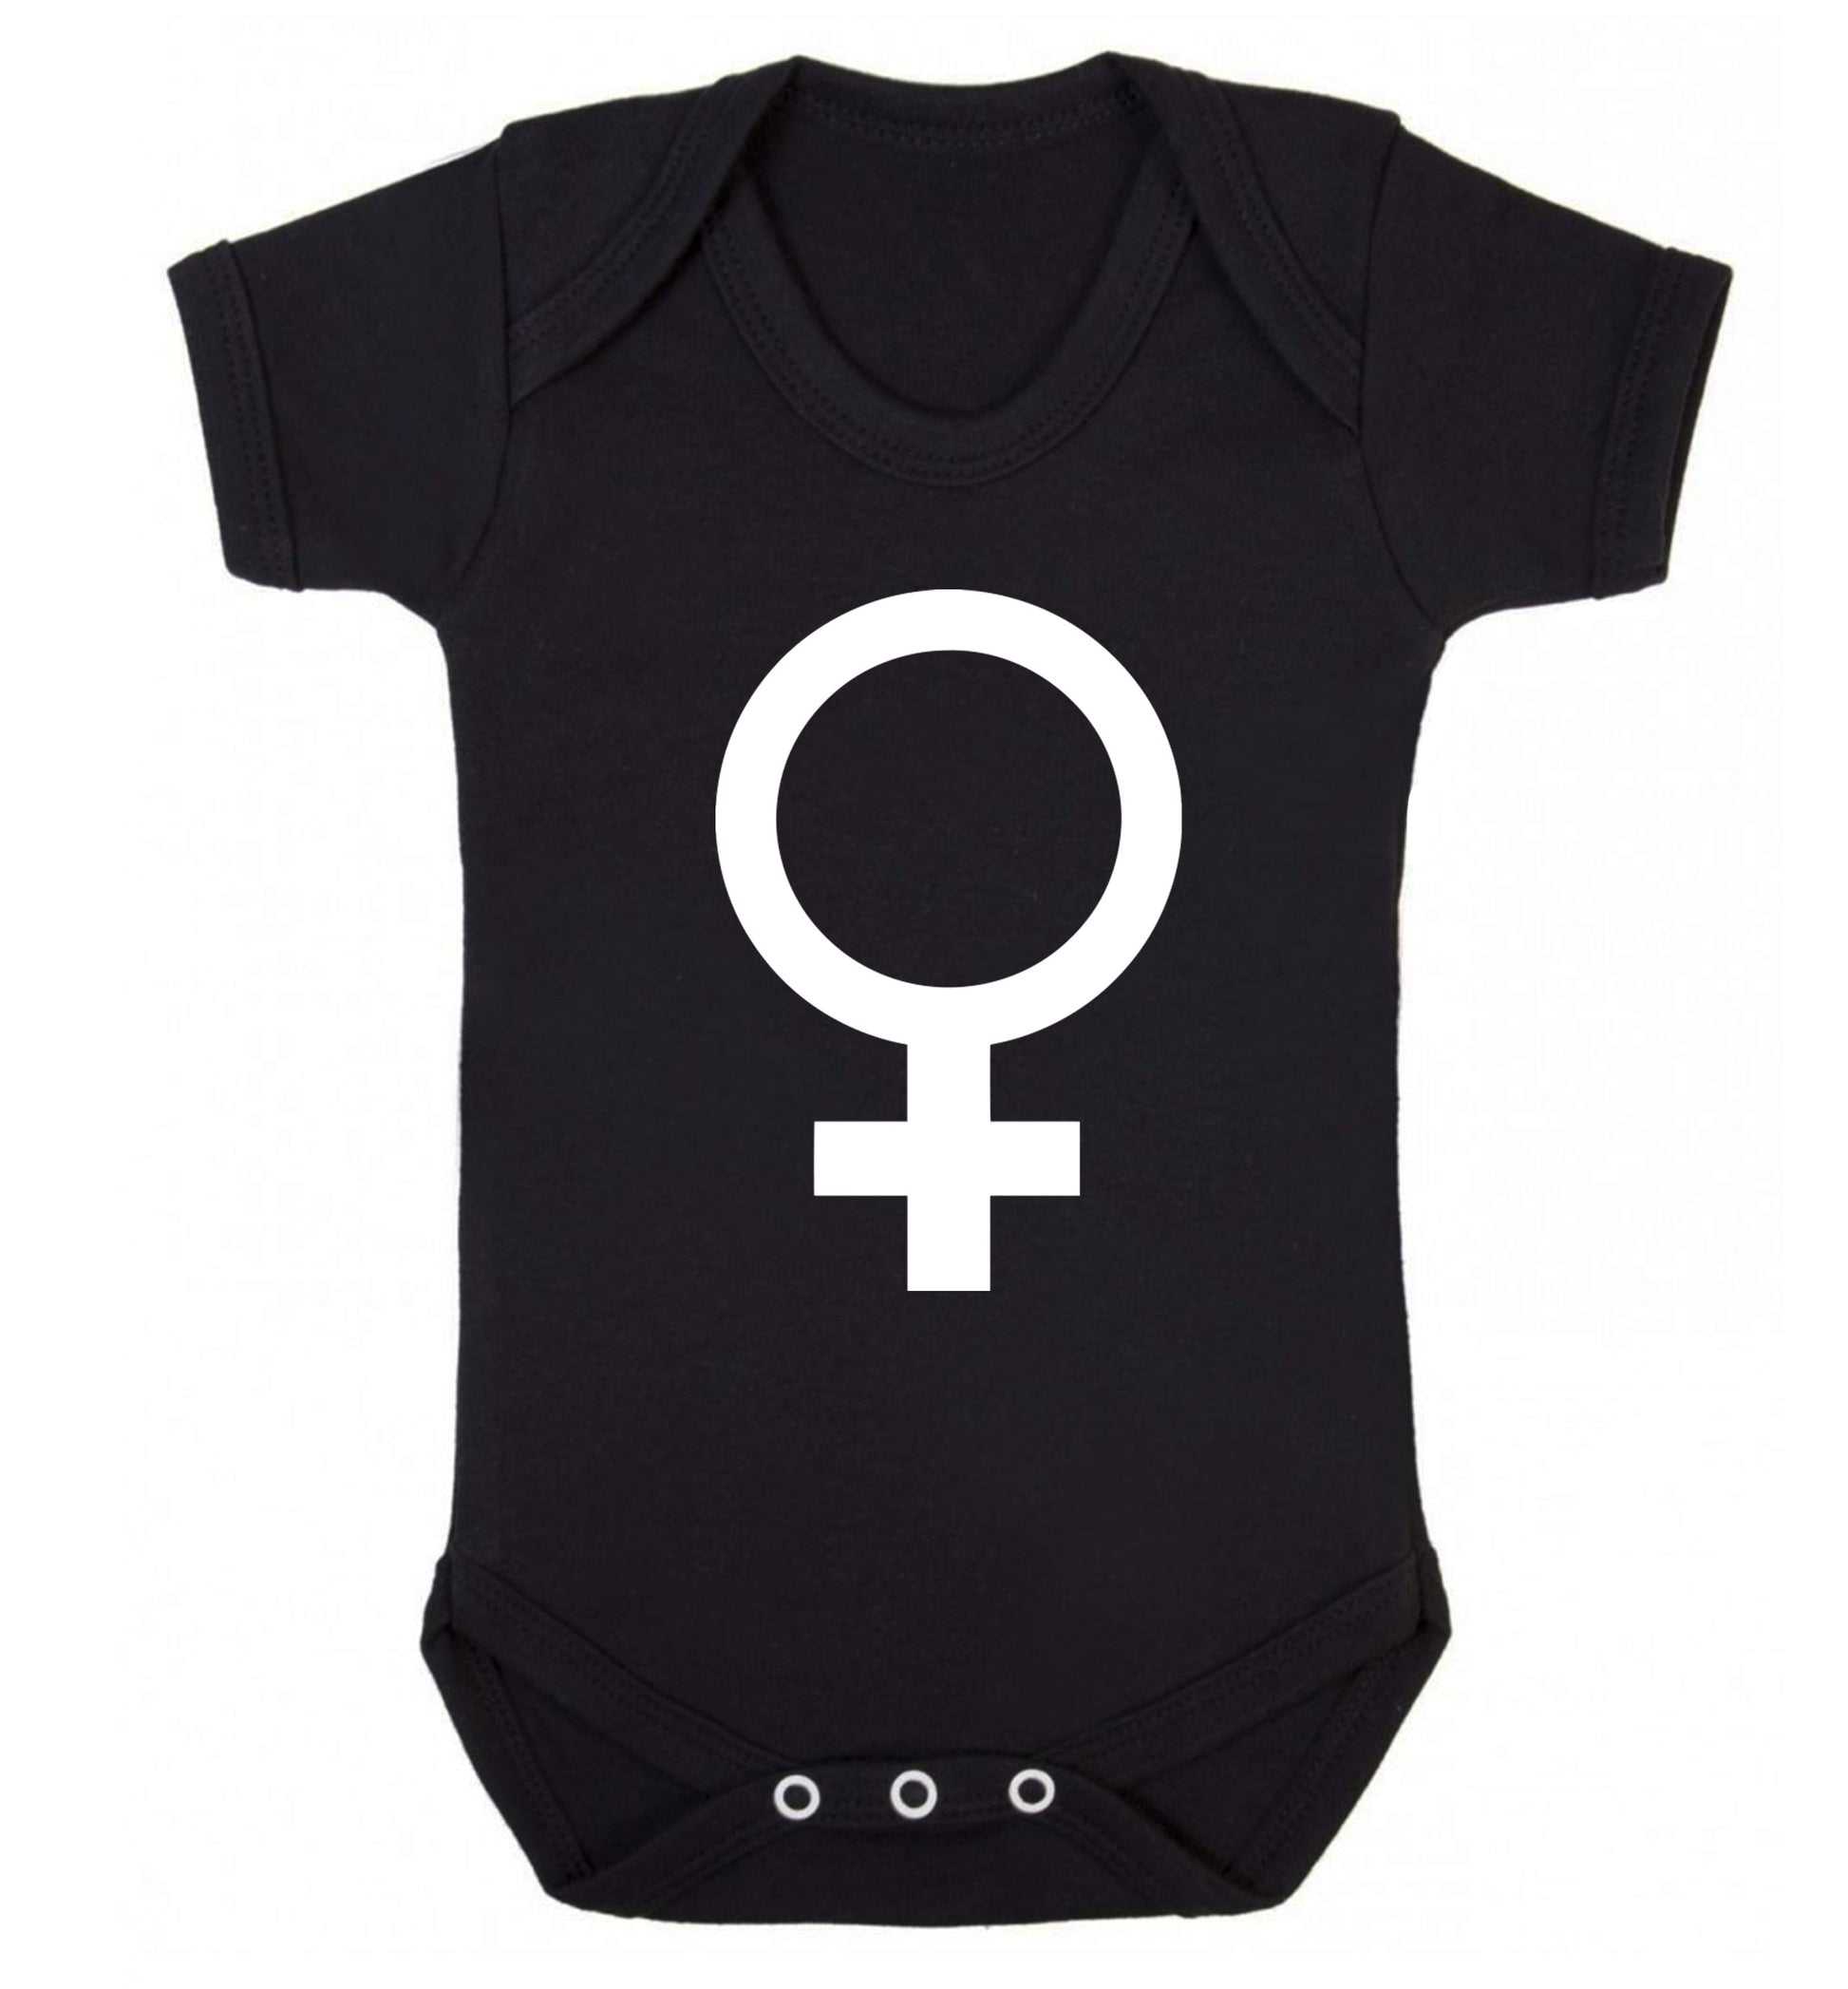 Female symbol large Baby Vest black 18-24 months